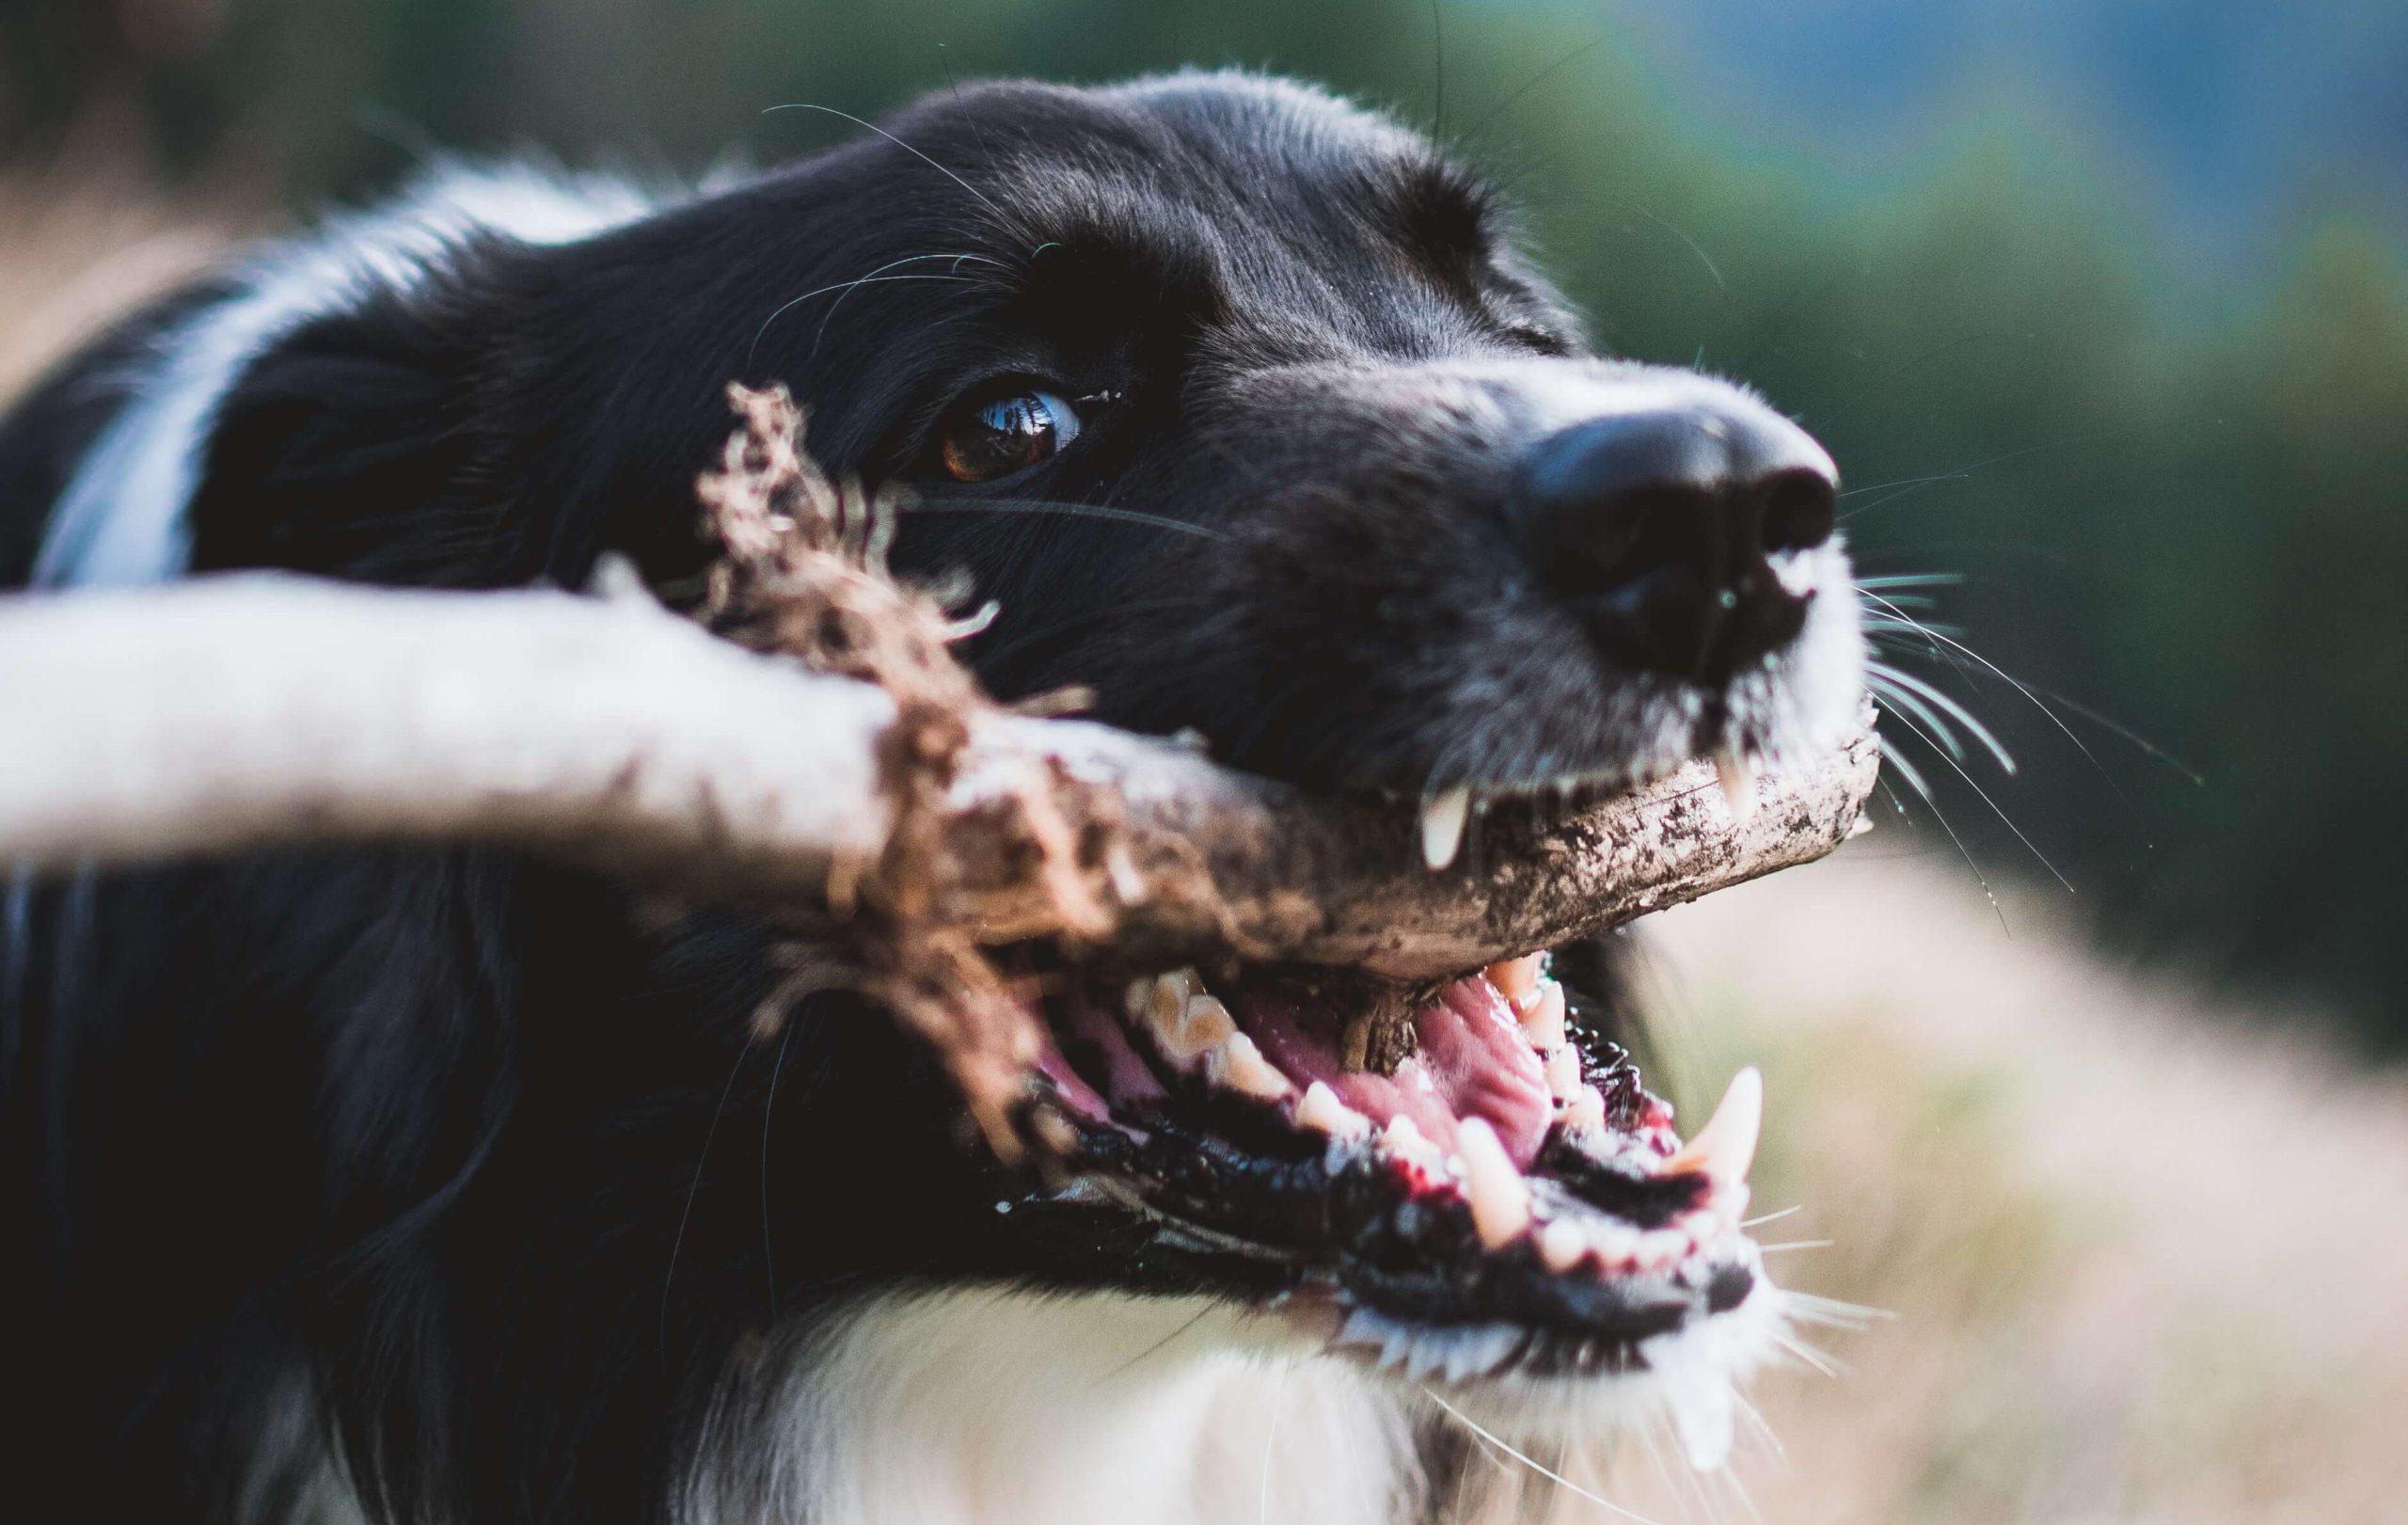 Why Do Dogs Chew Sticks?